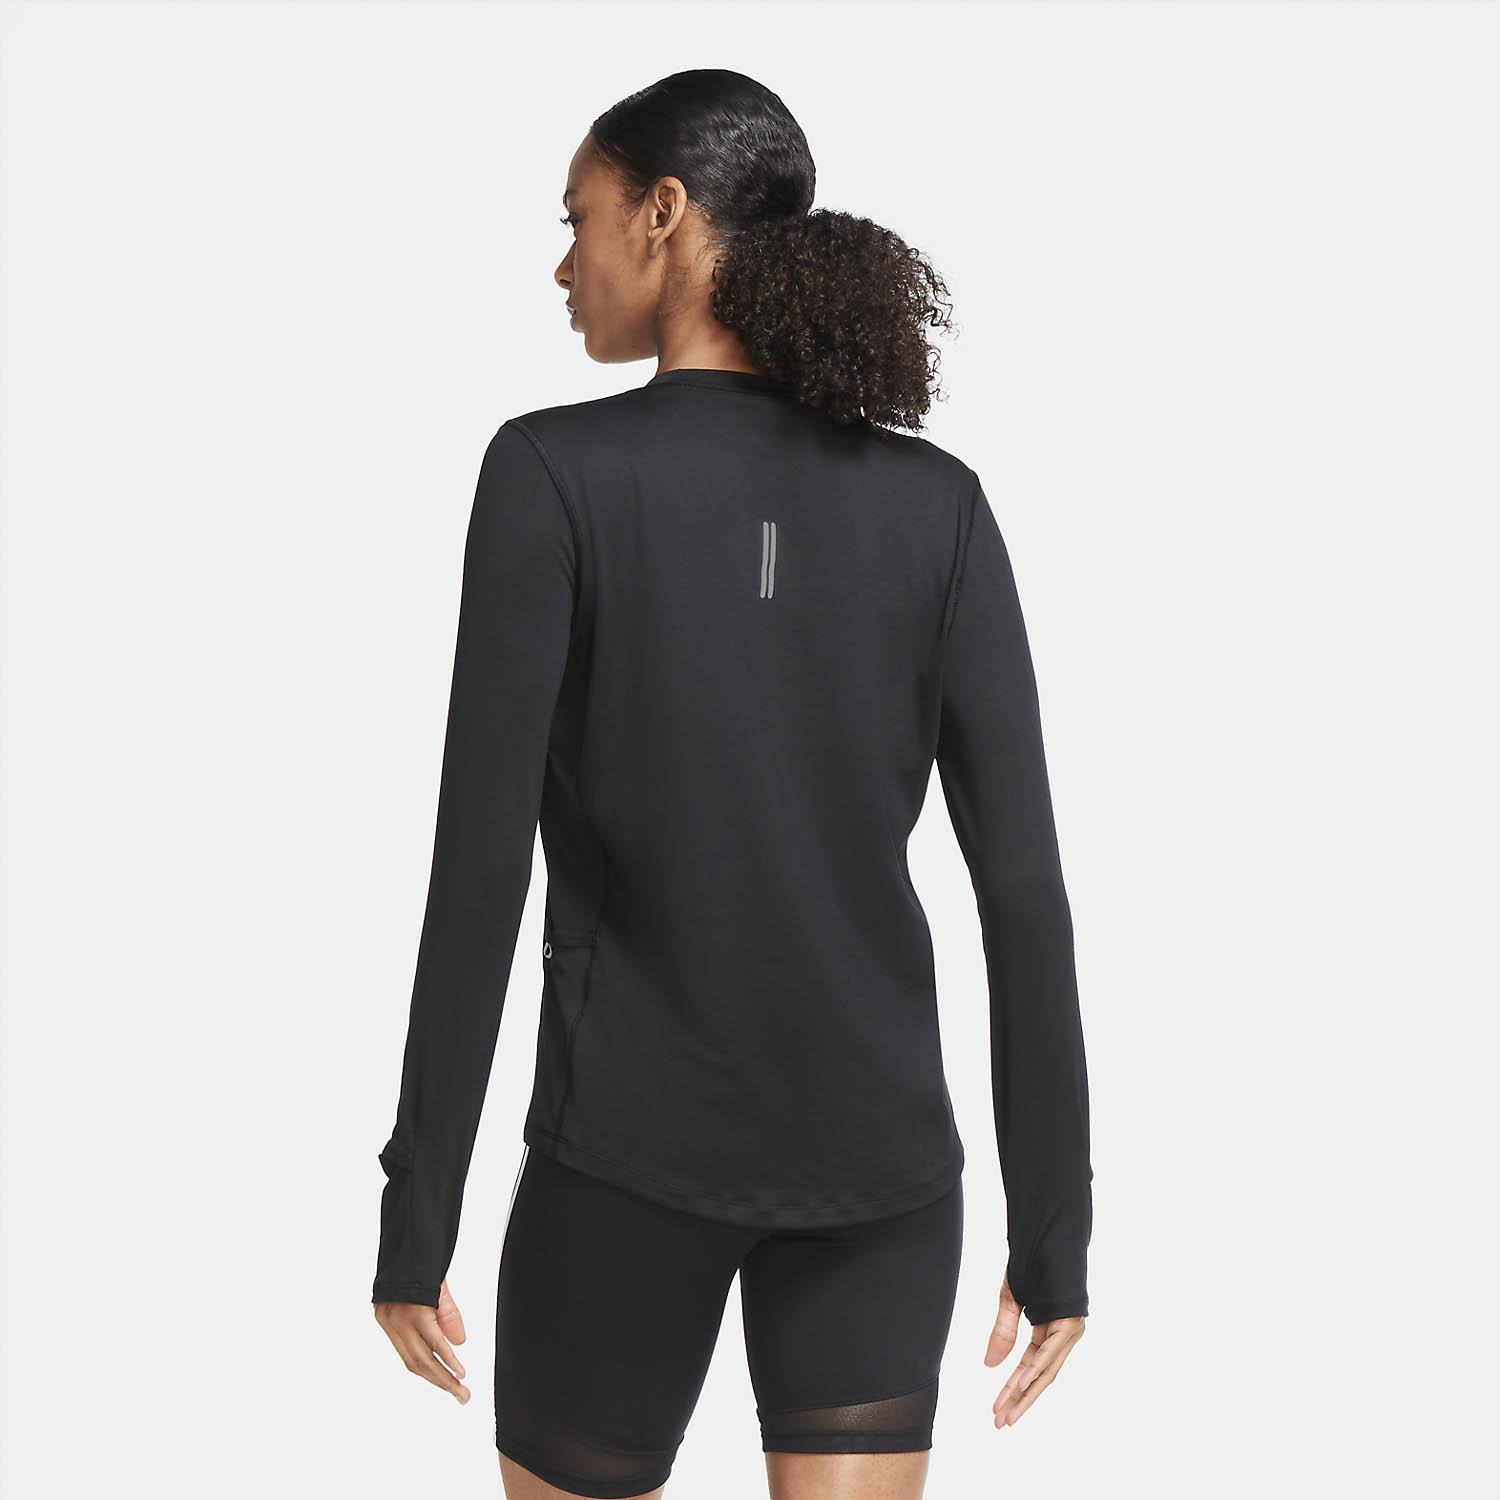 Nike Element Crew Women's Running Shirt - Black